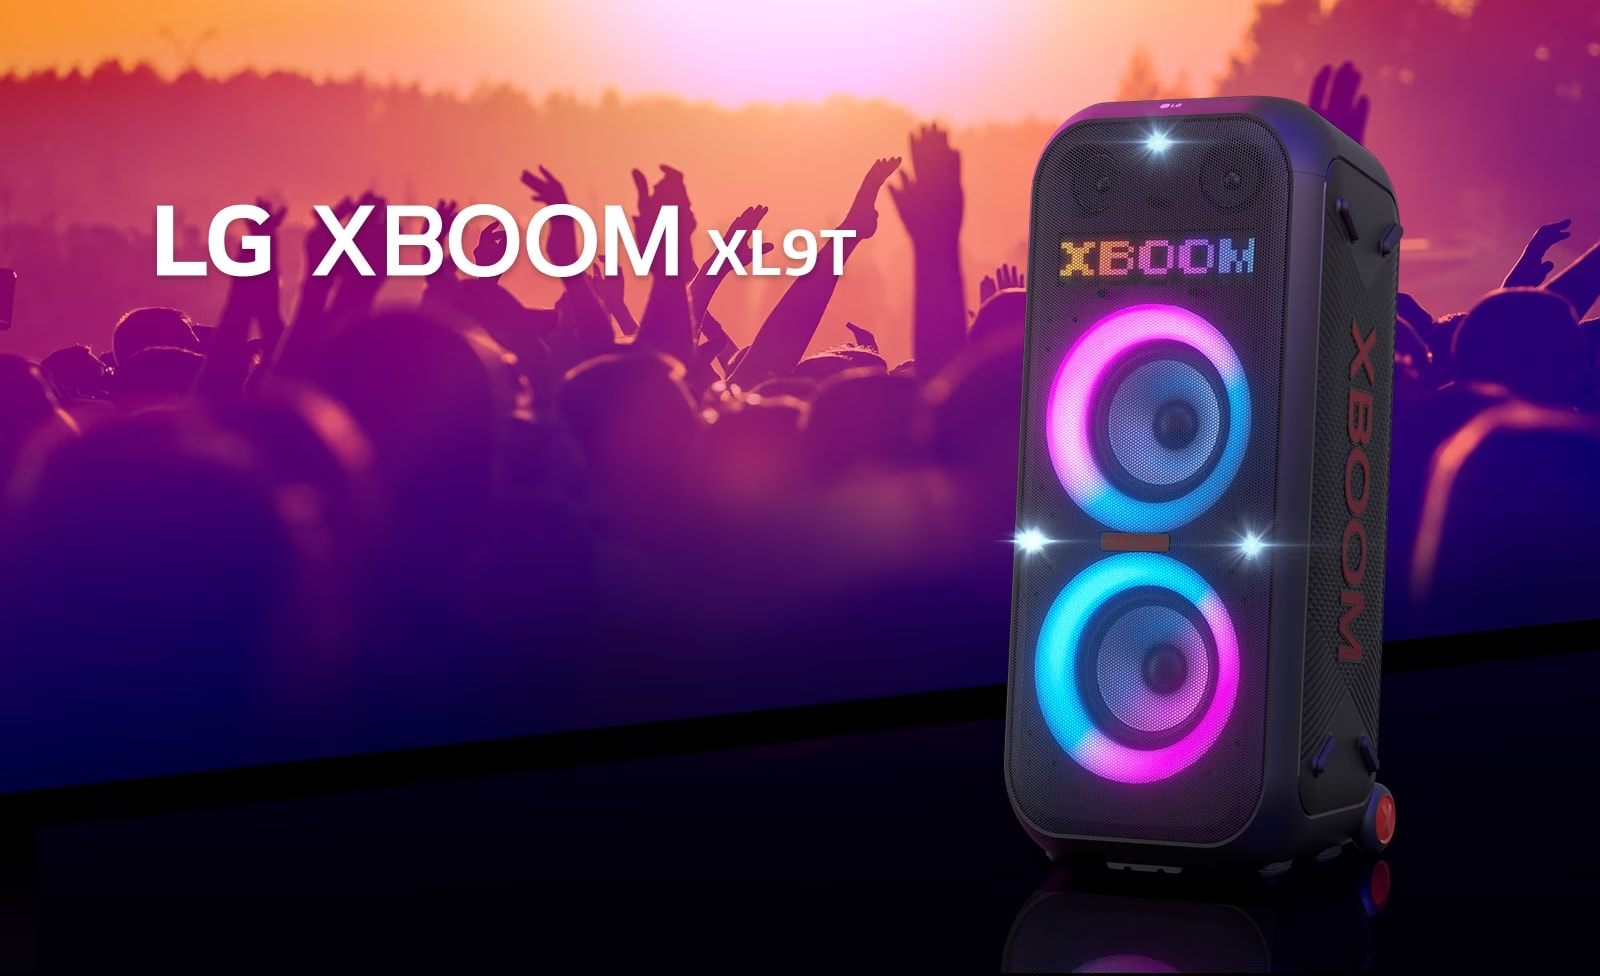 LG XBOOM XL9T se coloca en la superficie con vista diagonal. La iluminación multicolor se enciende y la pantalla muestra la palabra "XBOOM". Detrás de la bocina, una silueta de gente disfrutando de la fiesta.